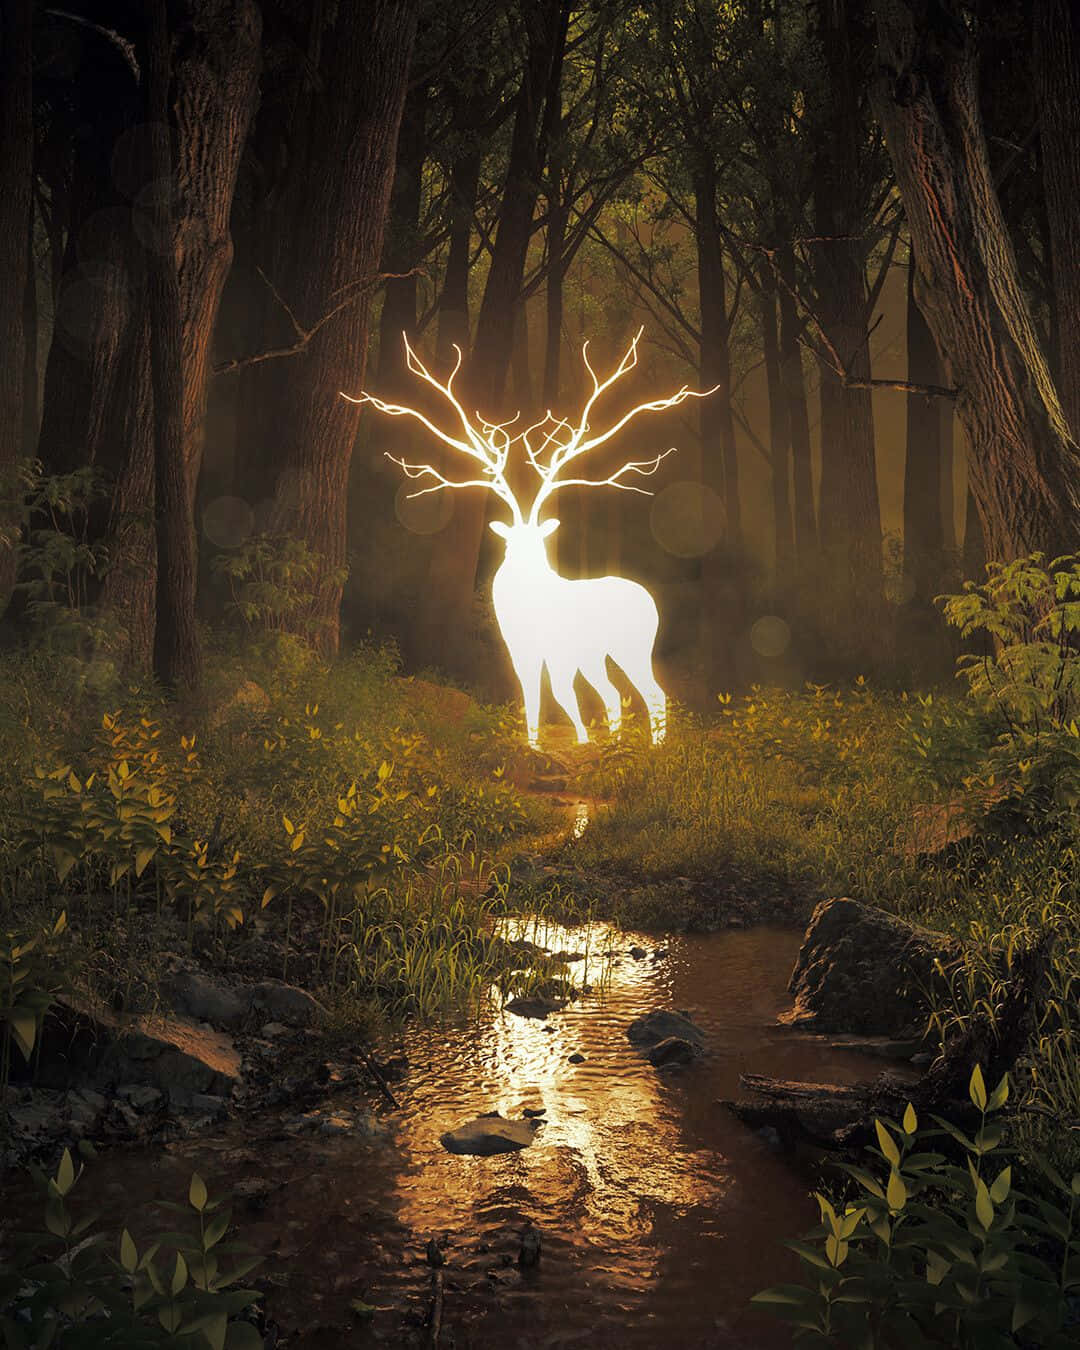 Tag en pause fra hverdagen og se en cool hjort hænge omkring i naturen. Wallpaper